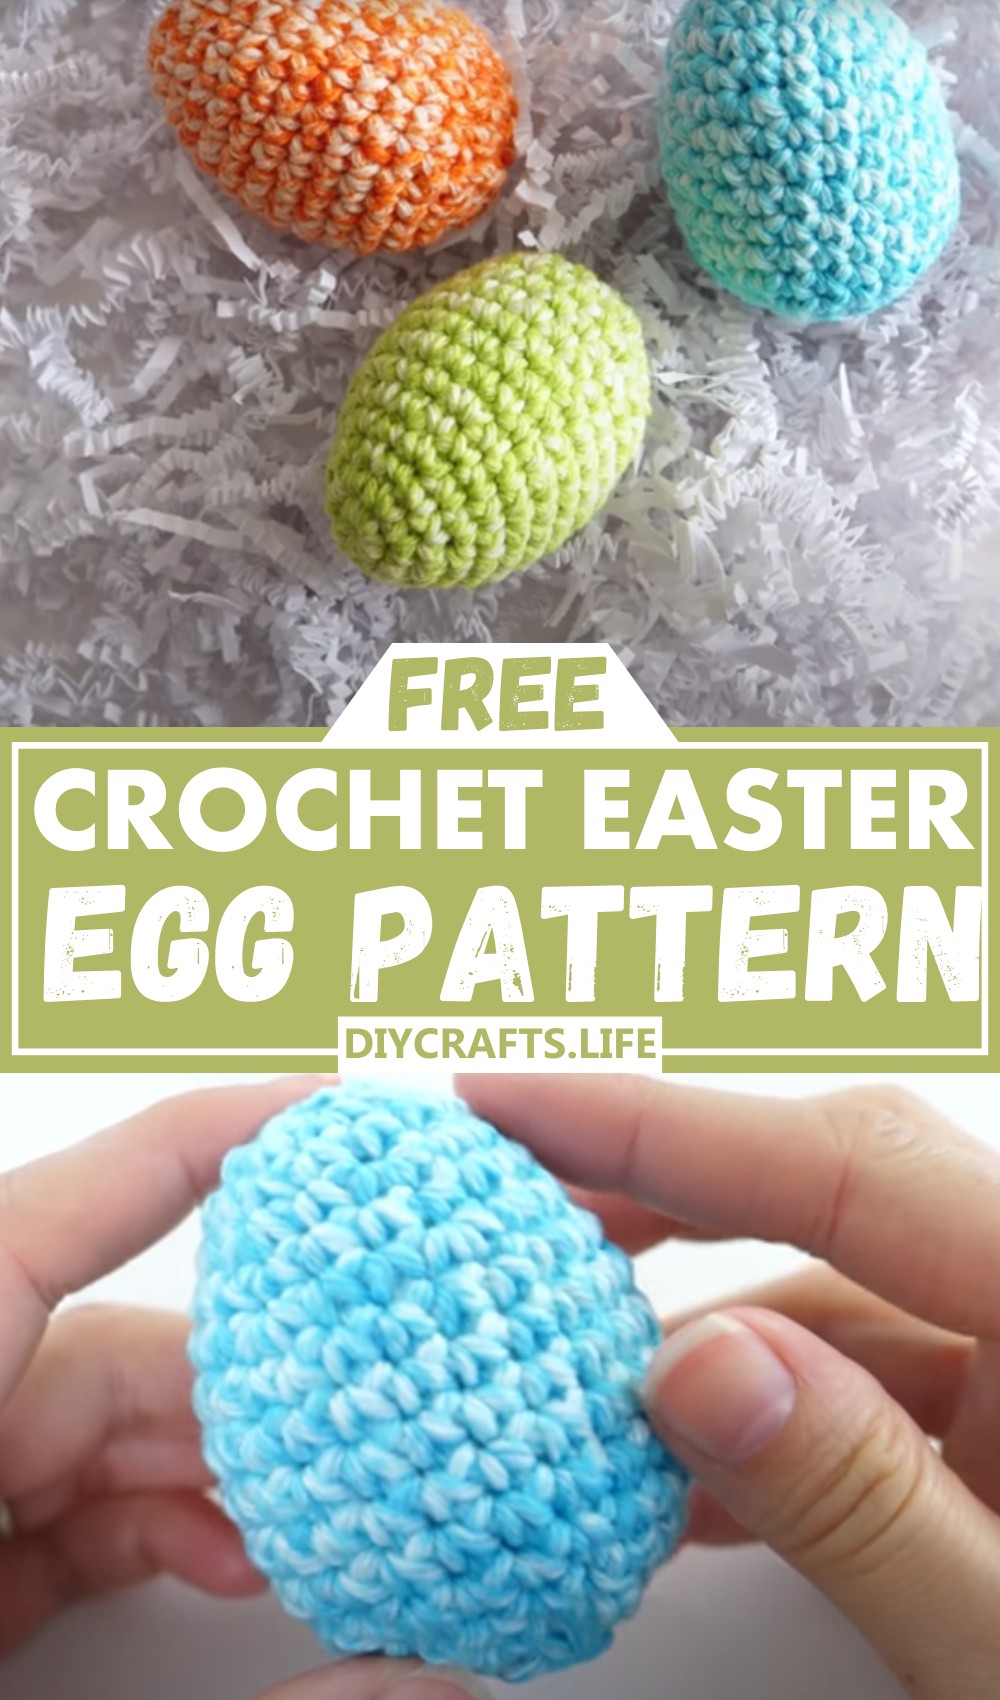 Crochet Egg Pattern For Easter